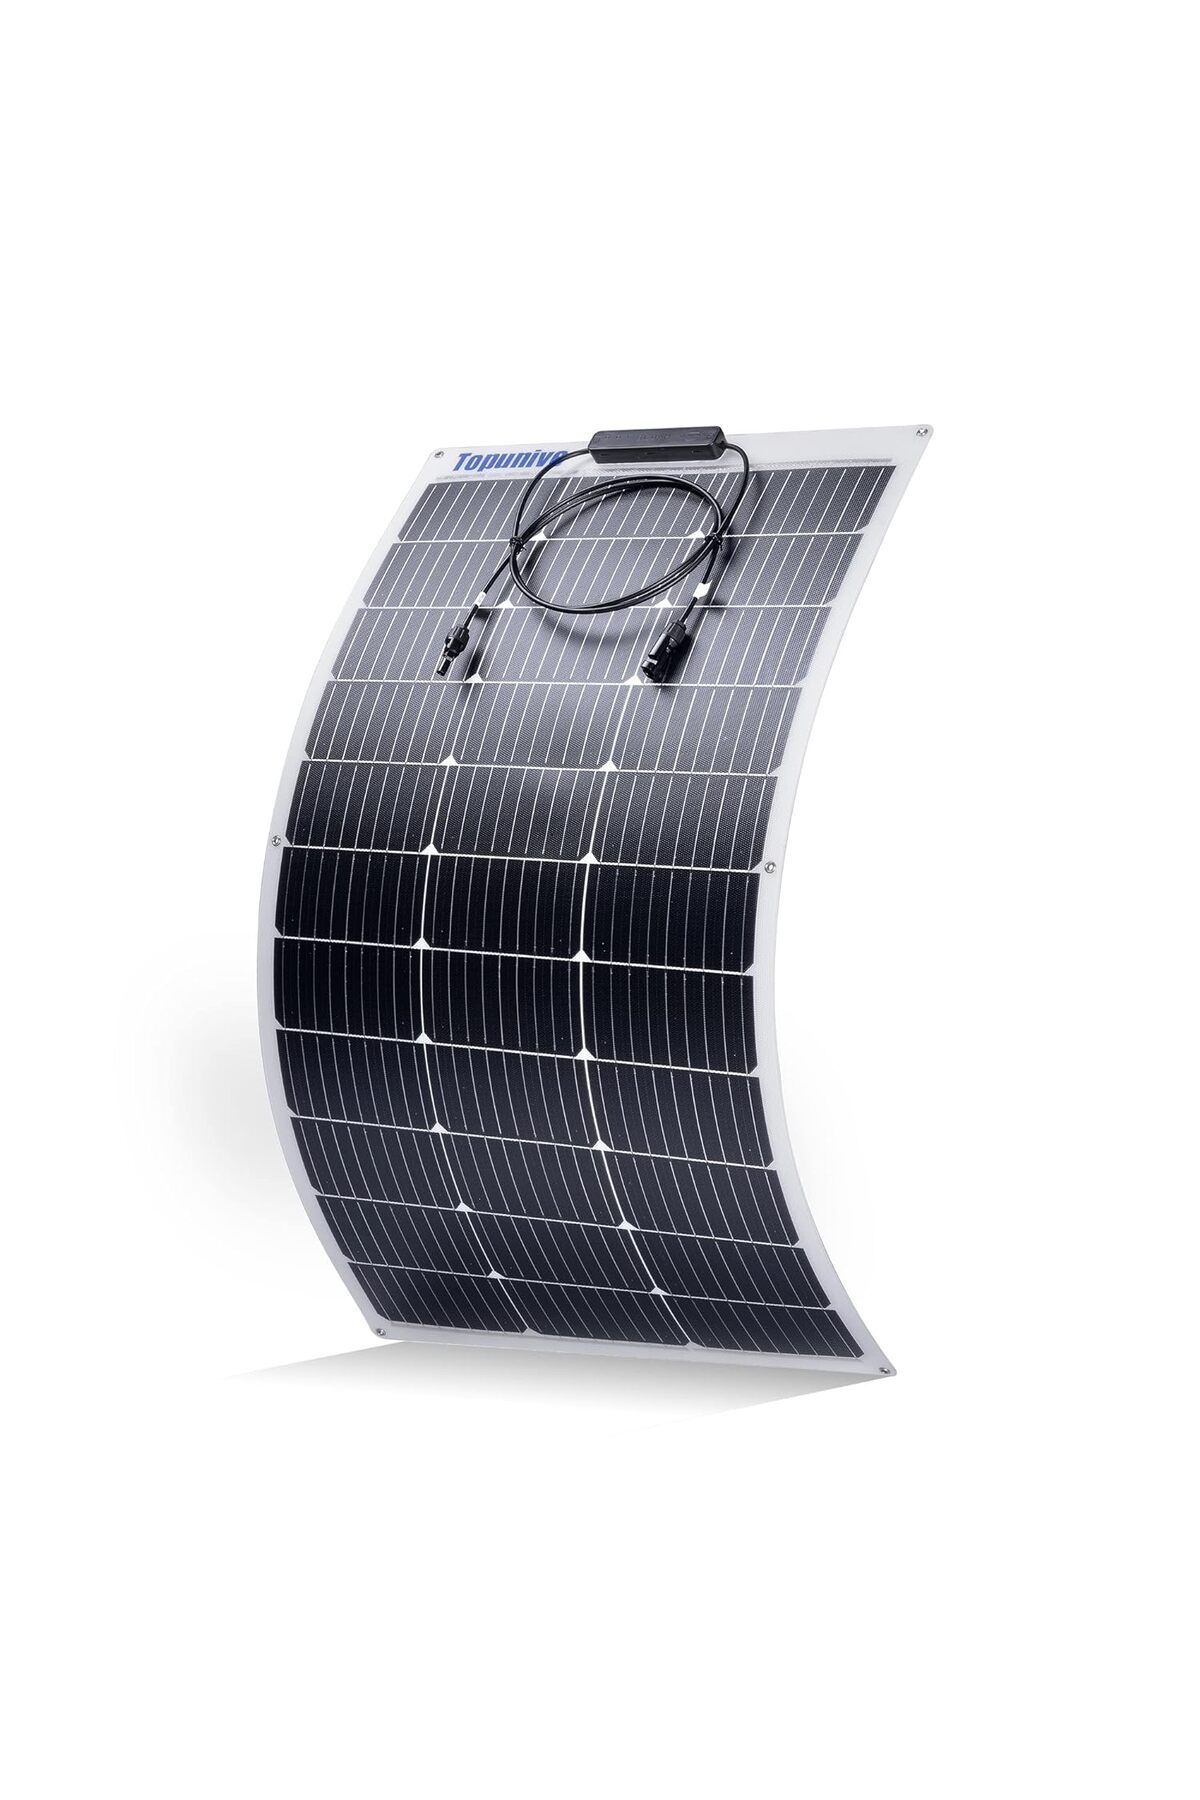 Topunive Esnek Güneş Paneli 100W 12V Monokristal Esnek Güneş Enerjisi Modülü Karavan, 12 Volt İçin